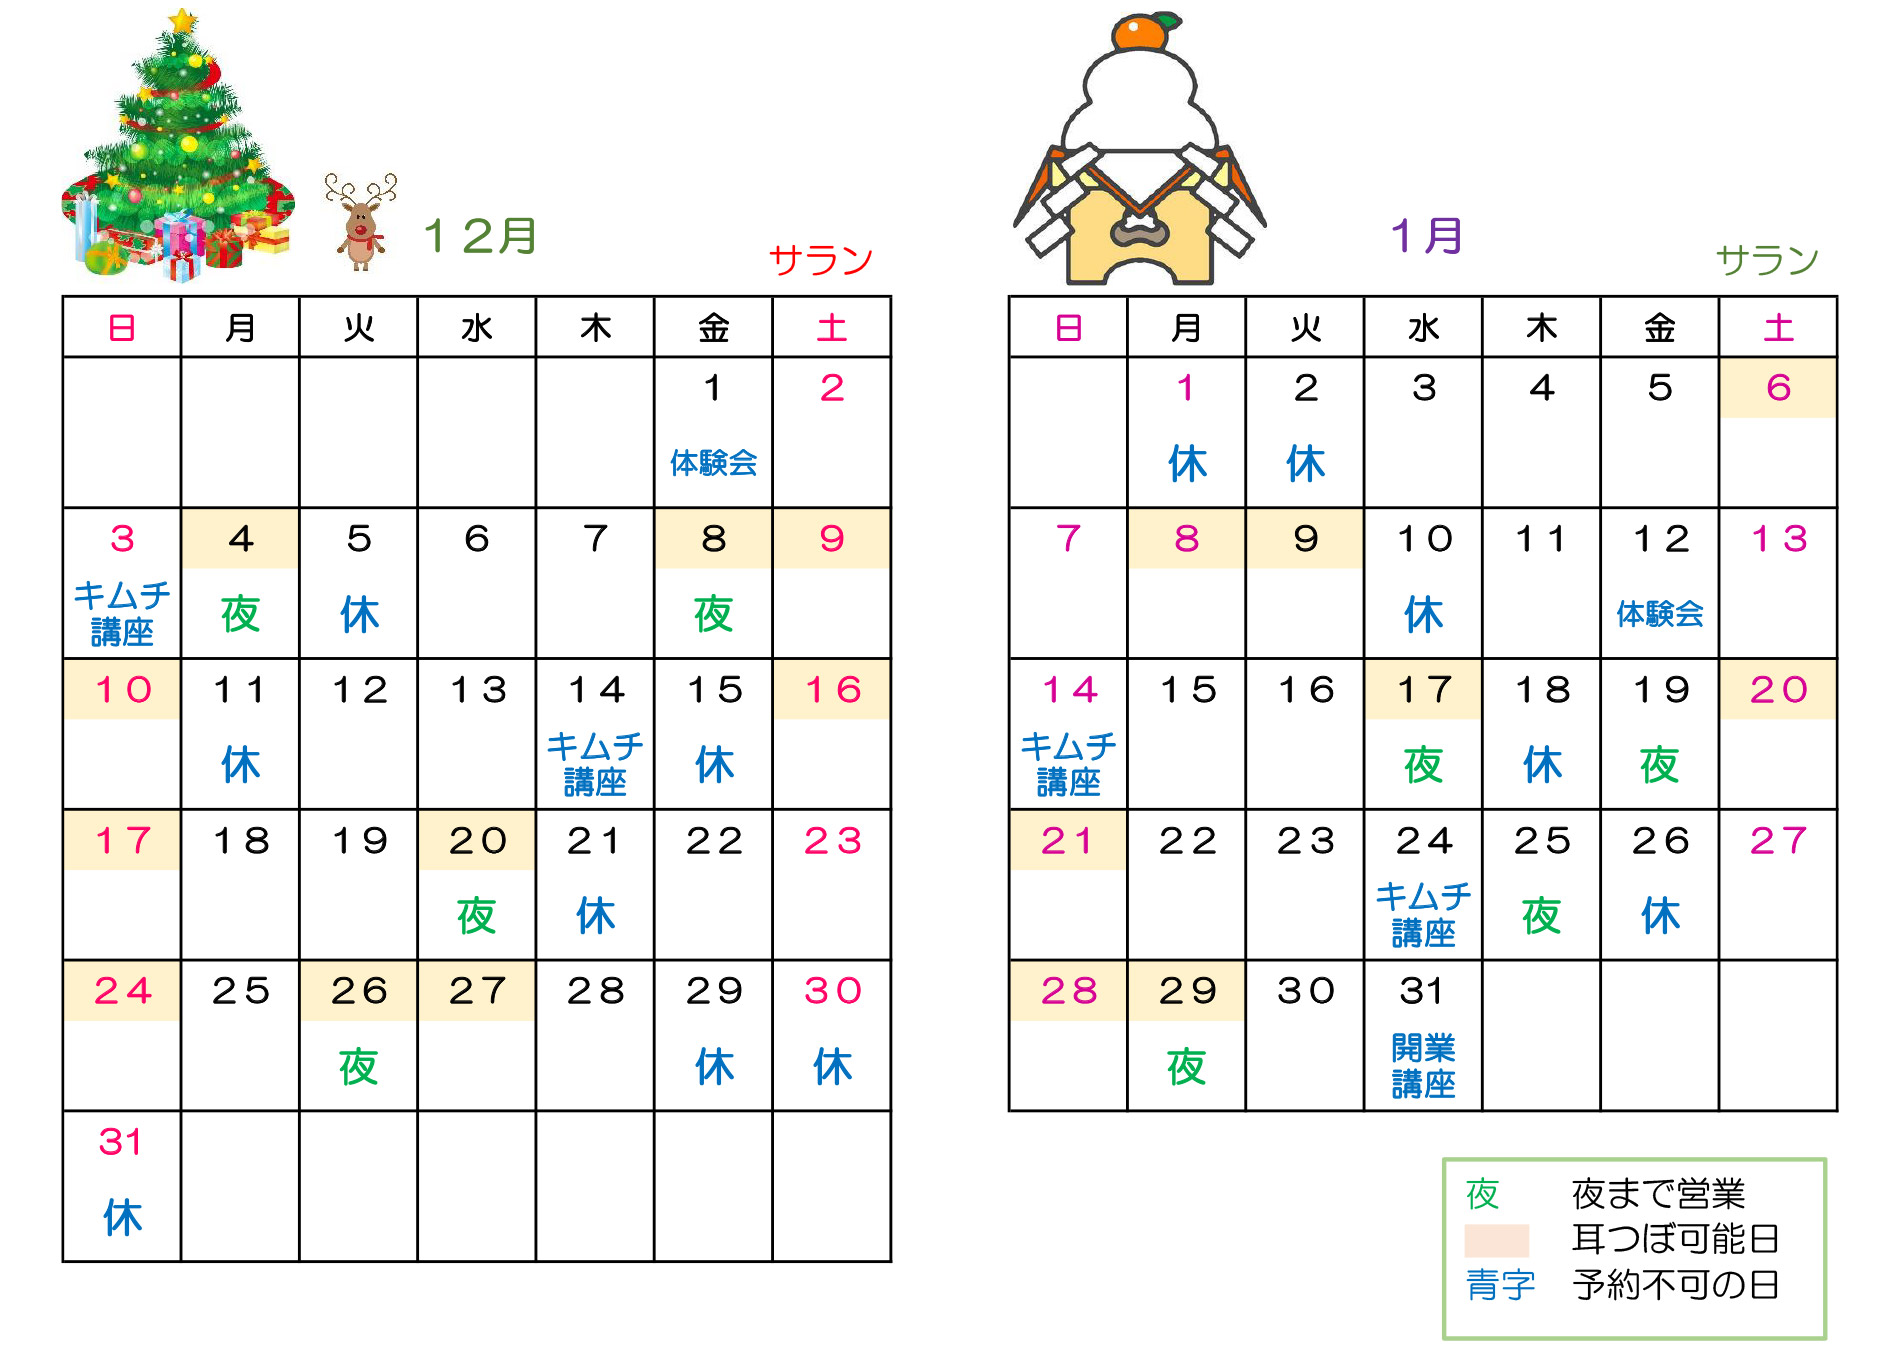 ”カレンダー”